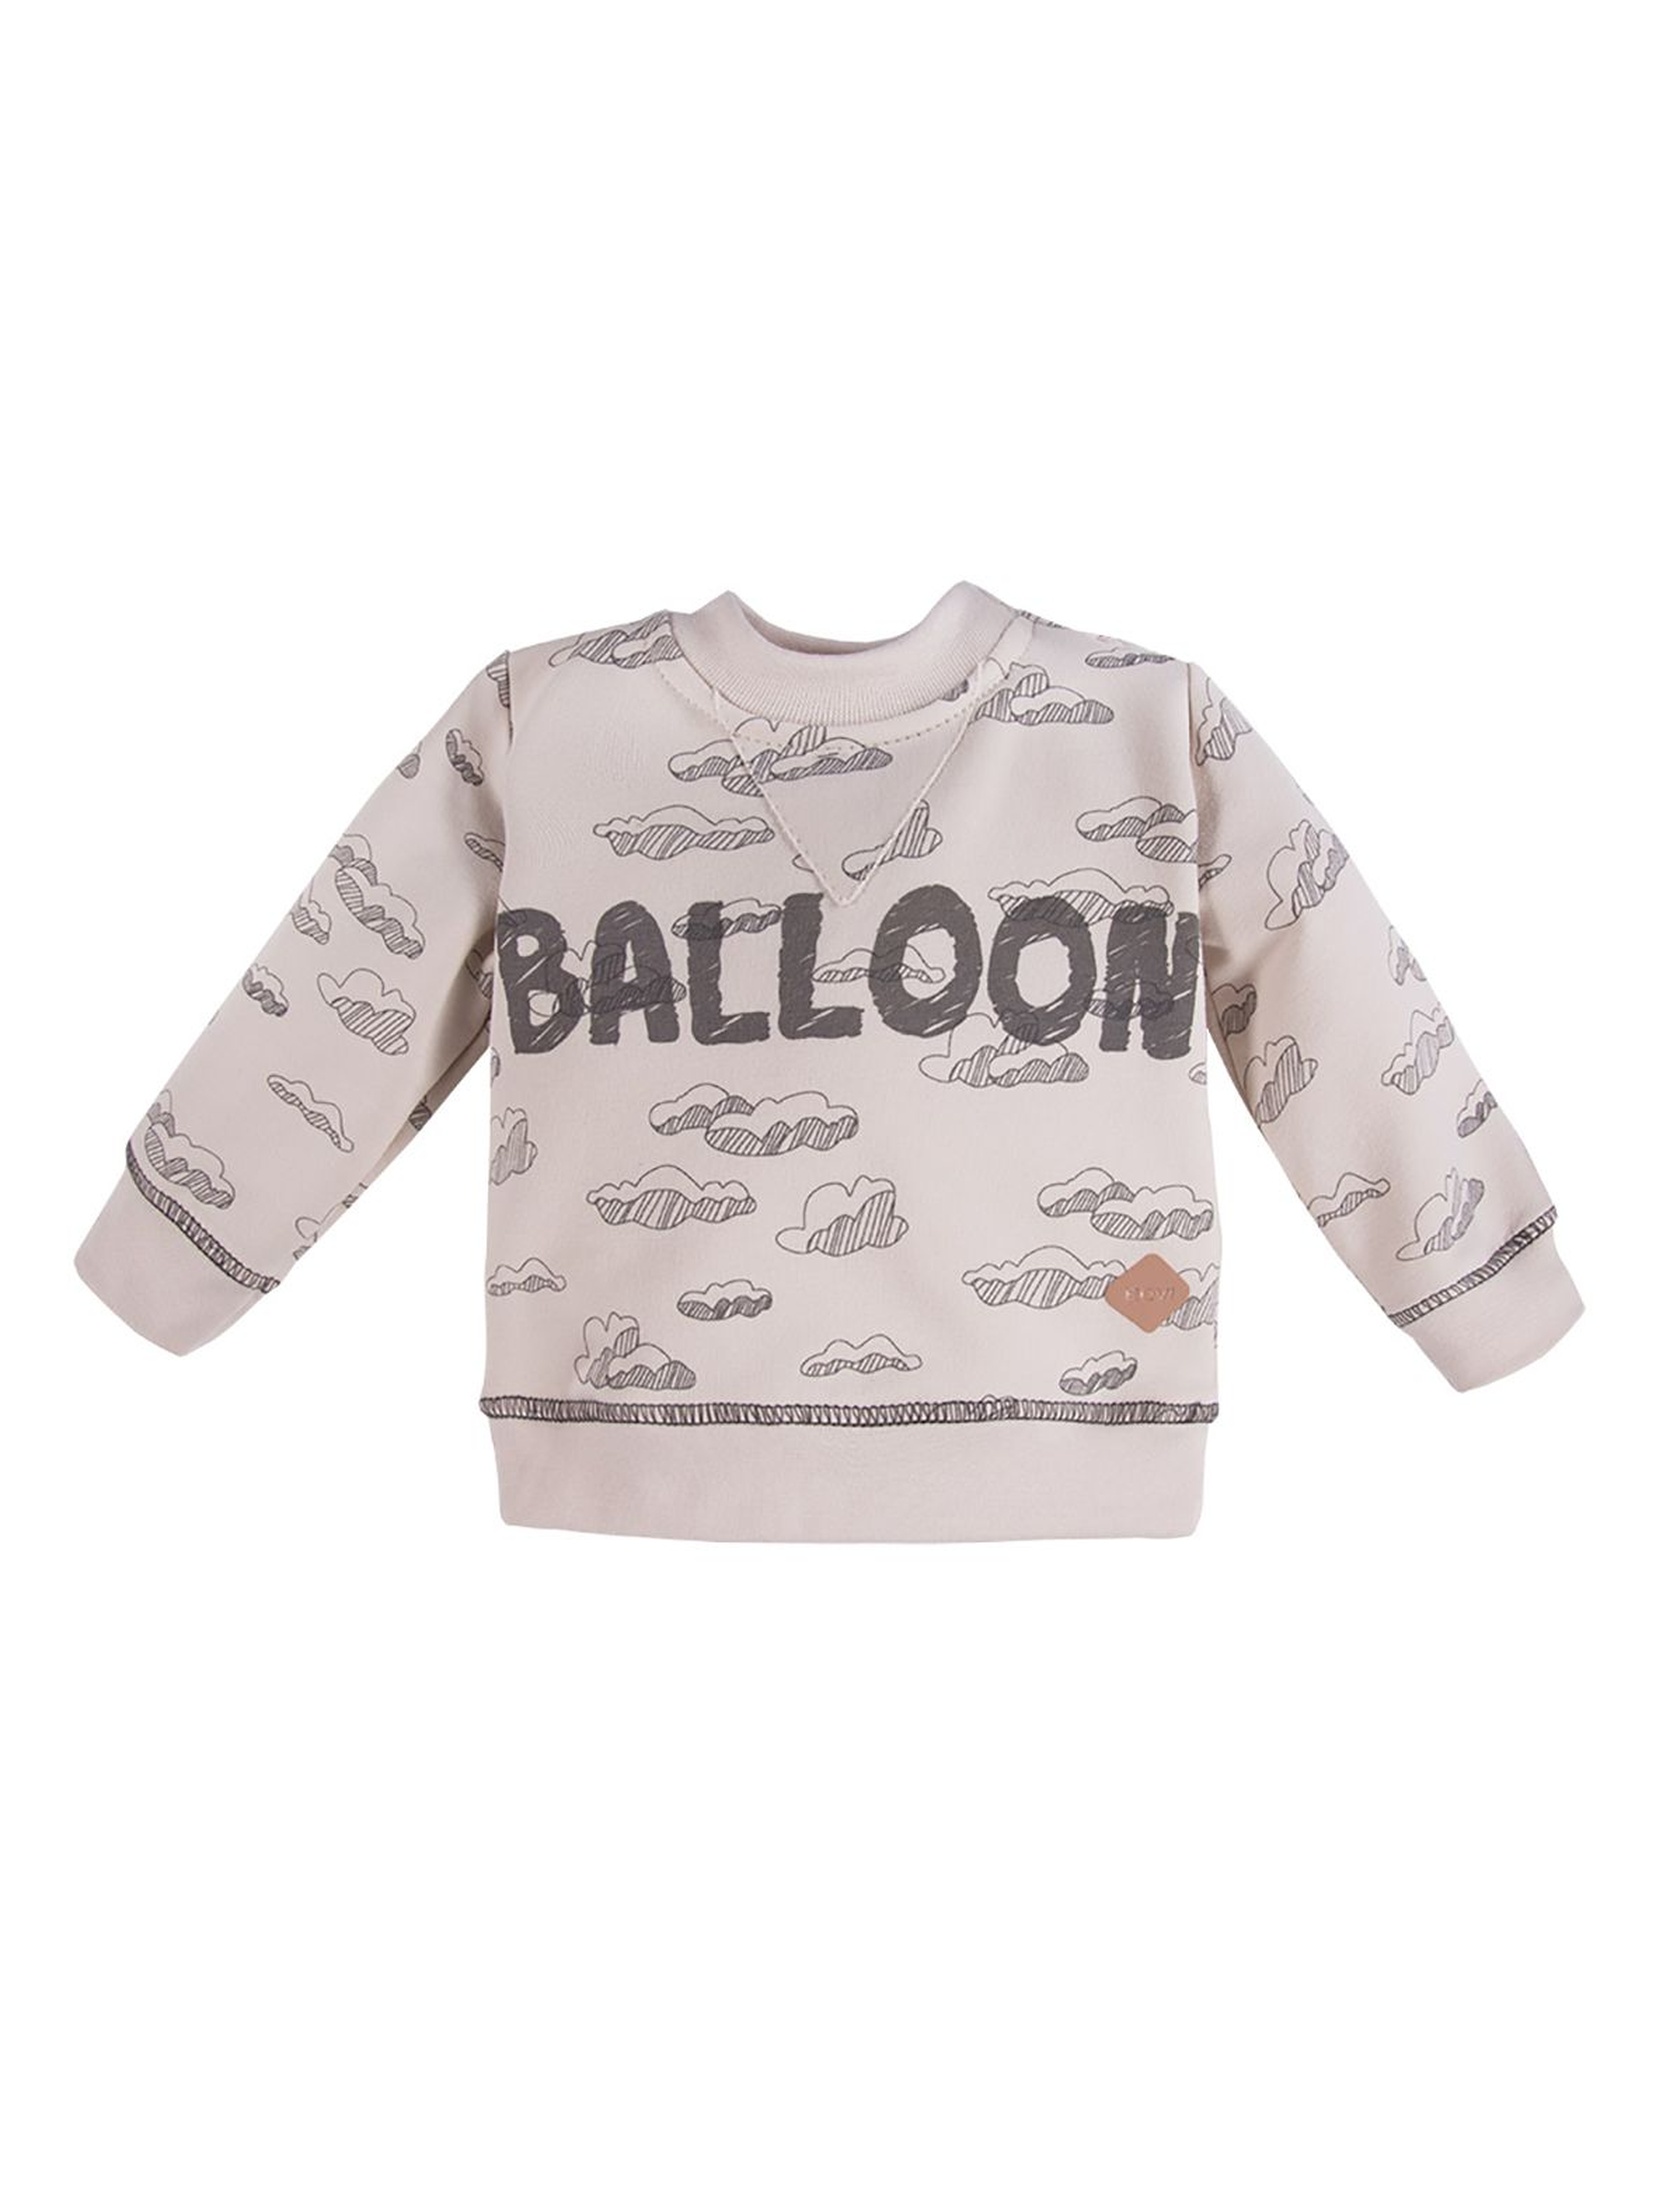 Bawełniana Bluza dresowa z kolekcji Balloons - beżowy